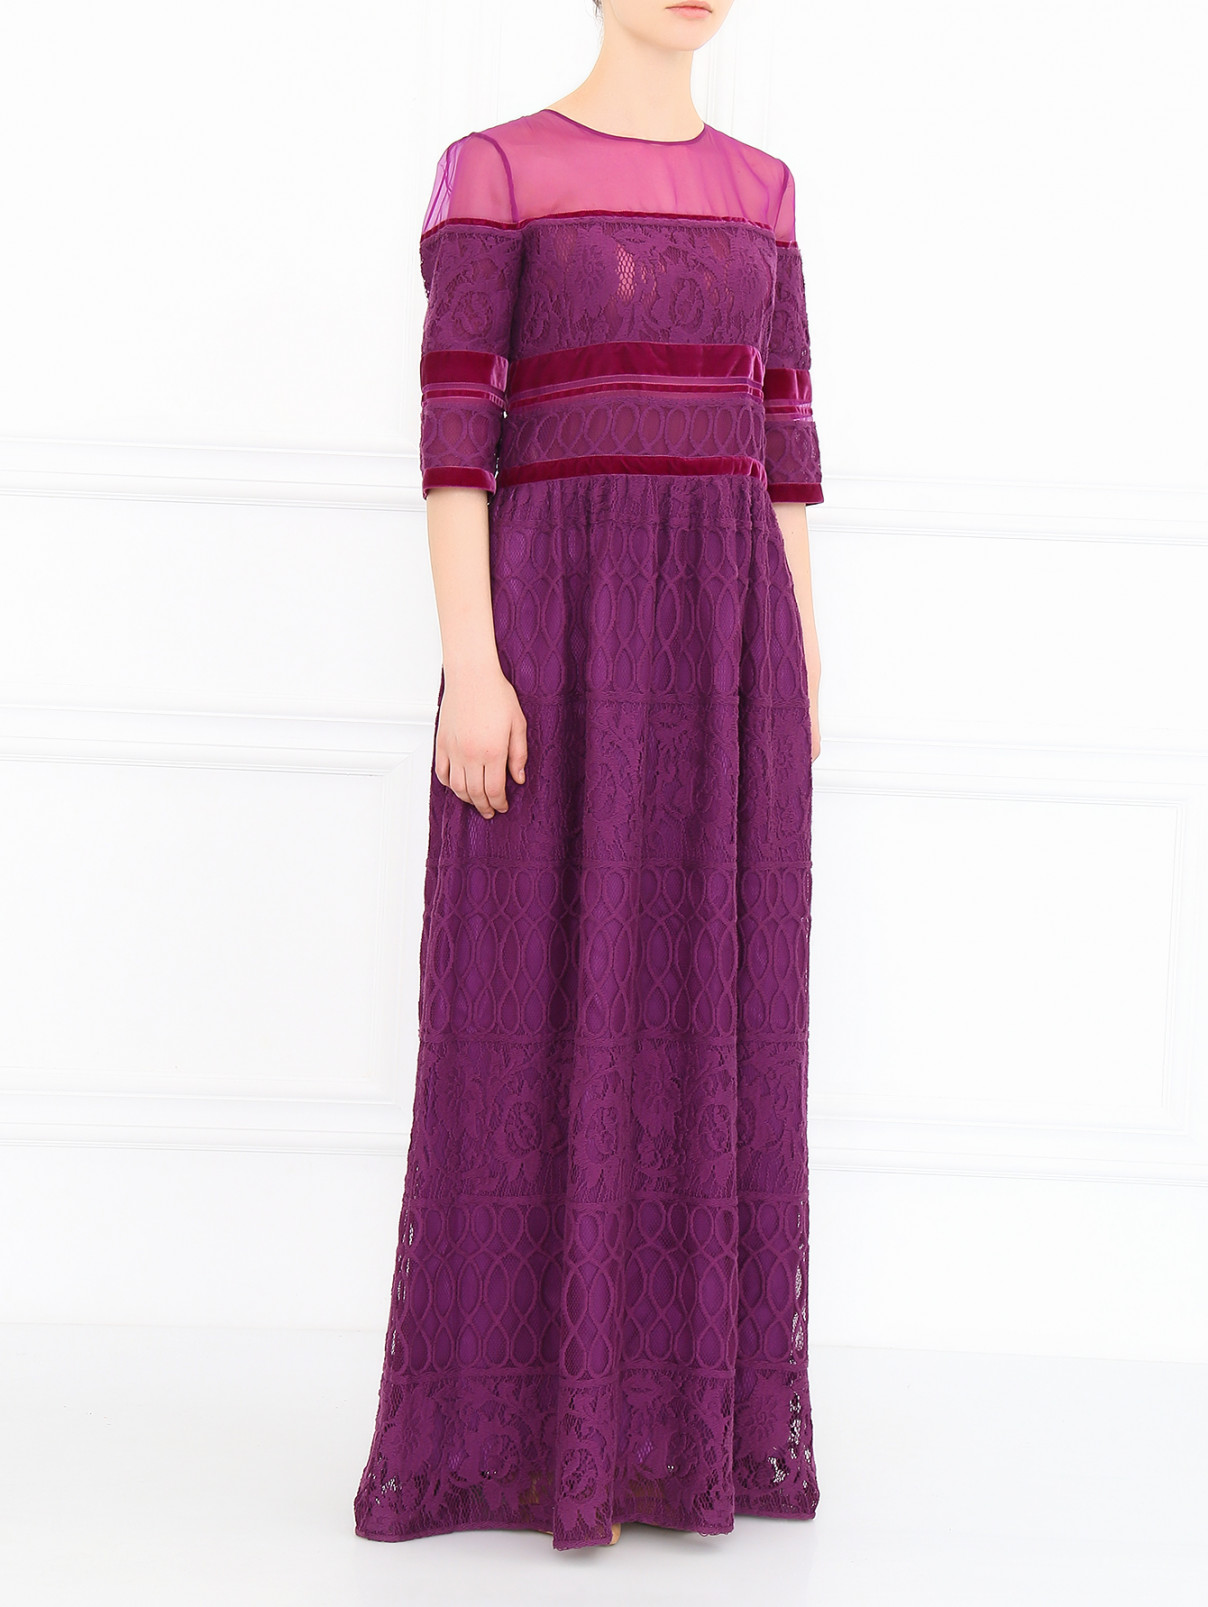 Платье-макси из хлопка с кружевными вставками Alberta Ferretti  –  Модель Общий вид  – Цвет:  Фиолетовый